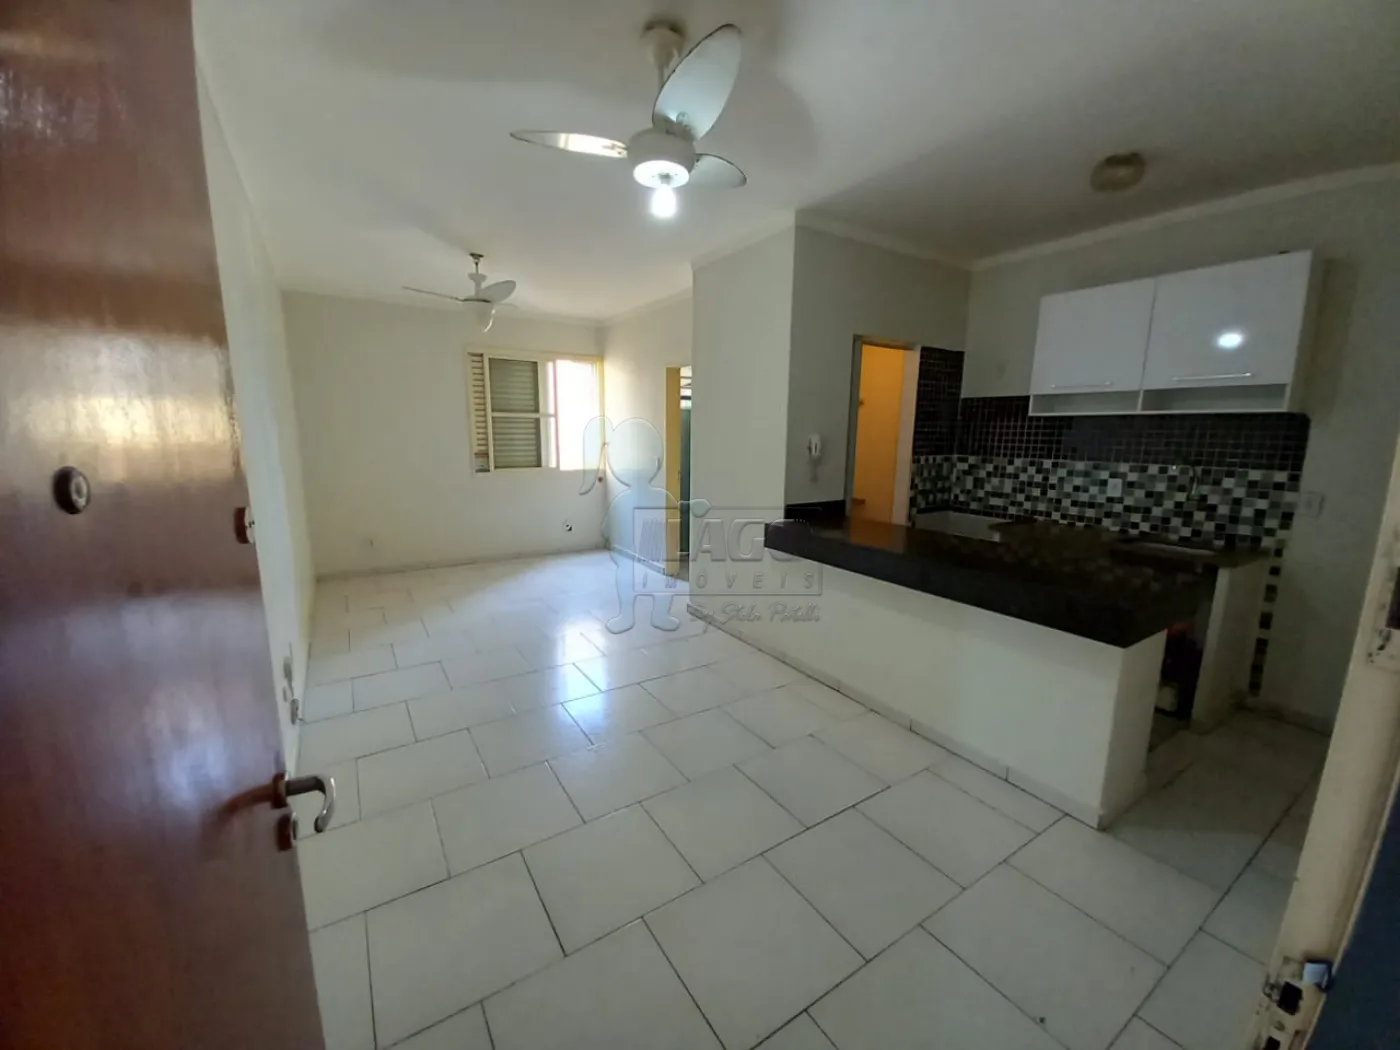 Alugar Apartamento / Kitnet em Ribeirão Preto R$ 800,00 - Foto 3